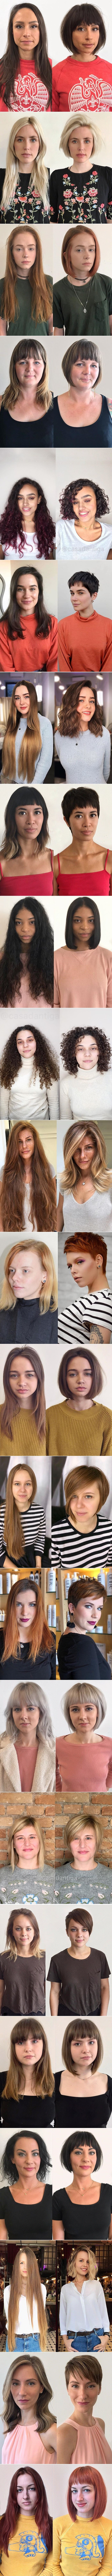 23 fotografije koje dokazuju da je nova frizura najbolji način za osvježavanje vlastitog izgleda